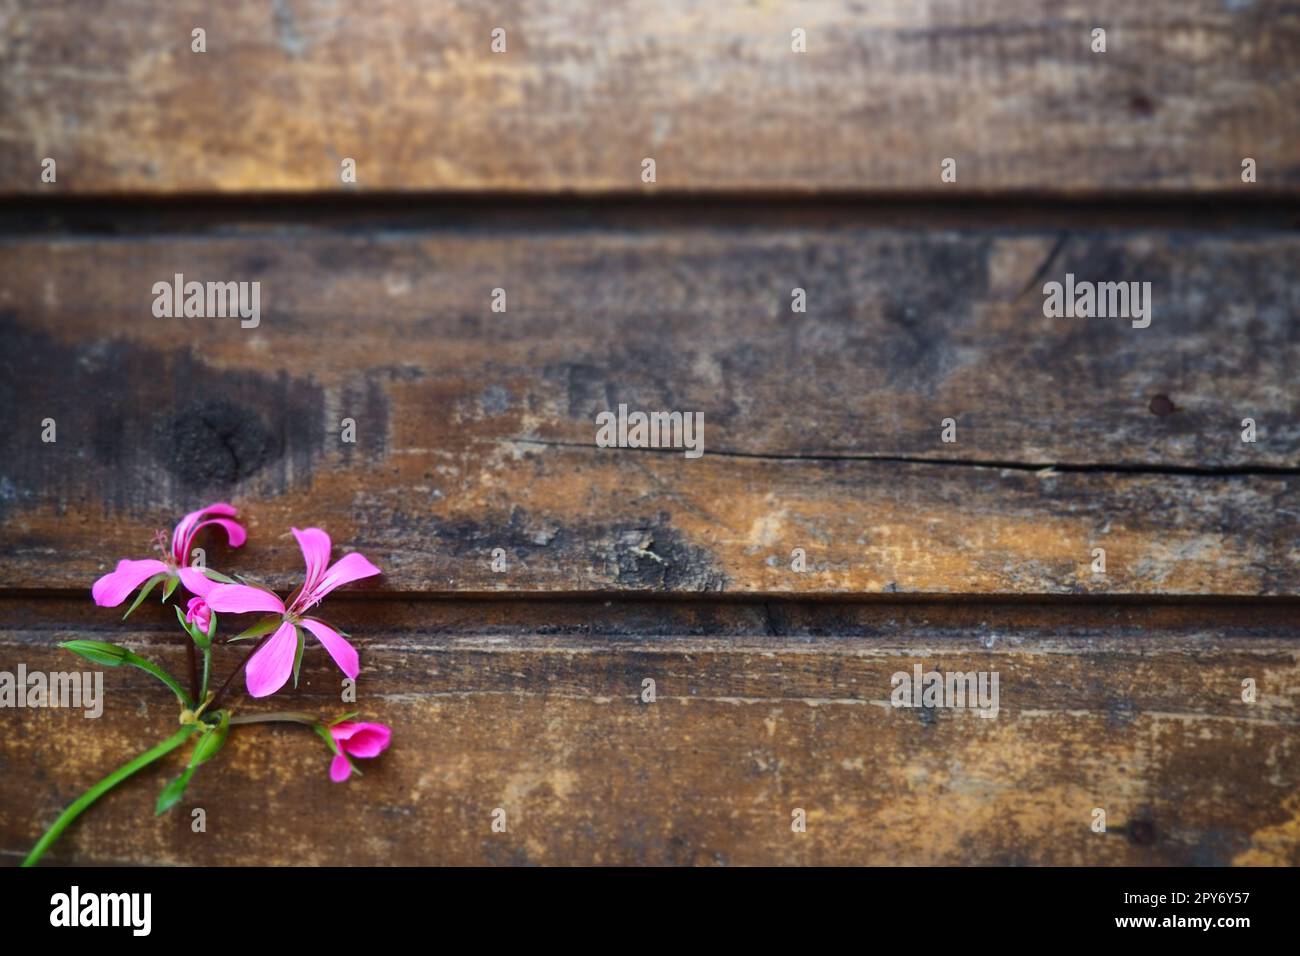 infloreszenz von rosa Efeu-Geranium auf Holzhintergrund. Wunderschöne Blütenbildung von rosa Efeu-Geranium auf dem Tisch in der unteren linken Ecke. Speicherplatz kopieren. Geben Sie Platz für Text frei. Postkartenlayout. Stockfoto